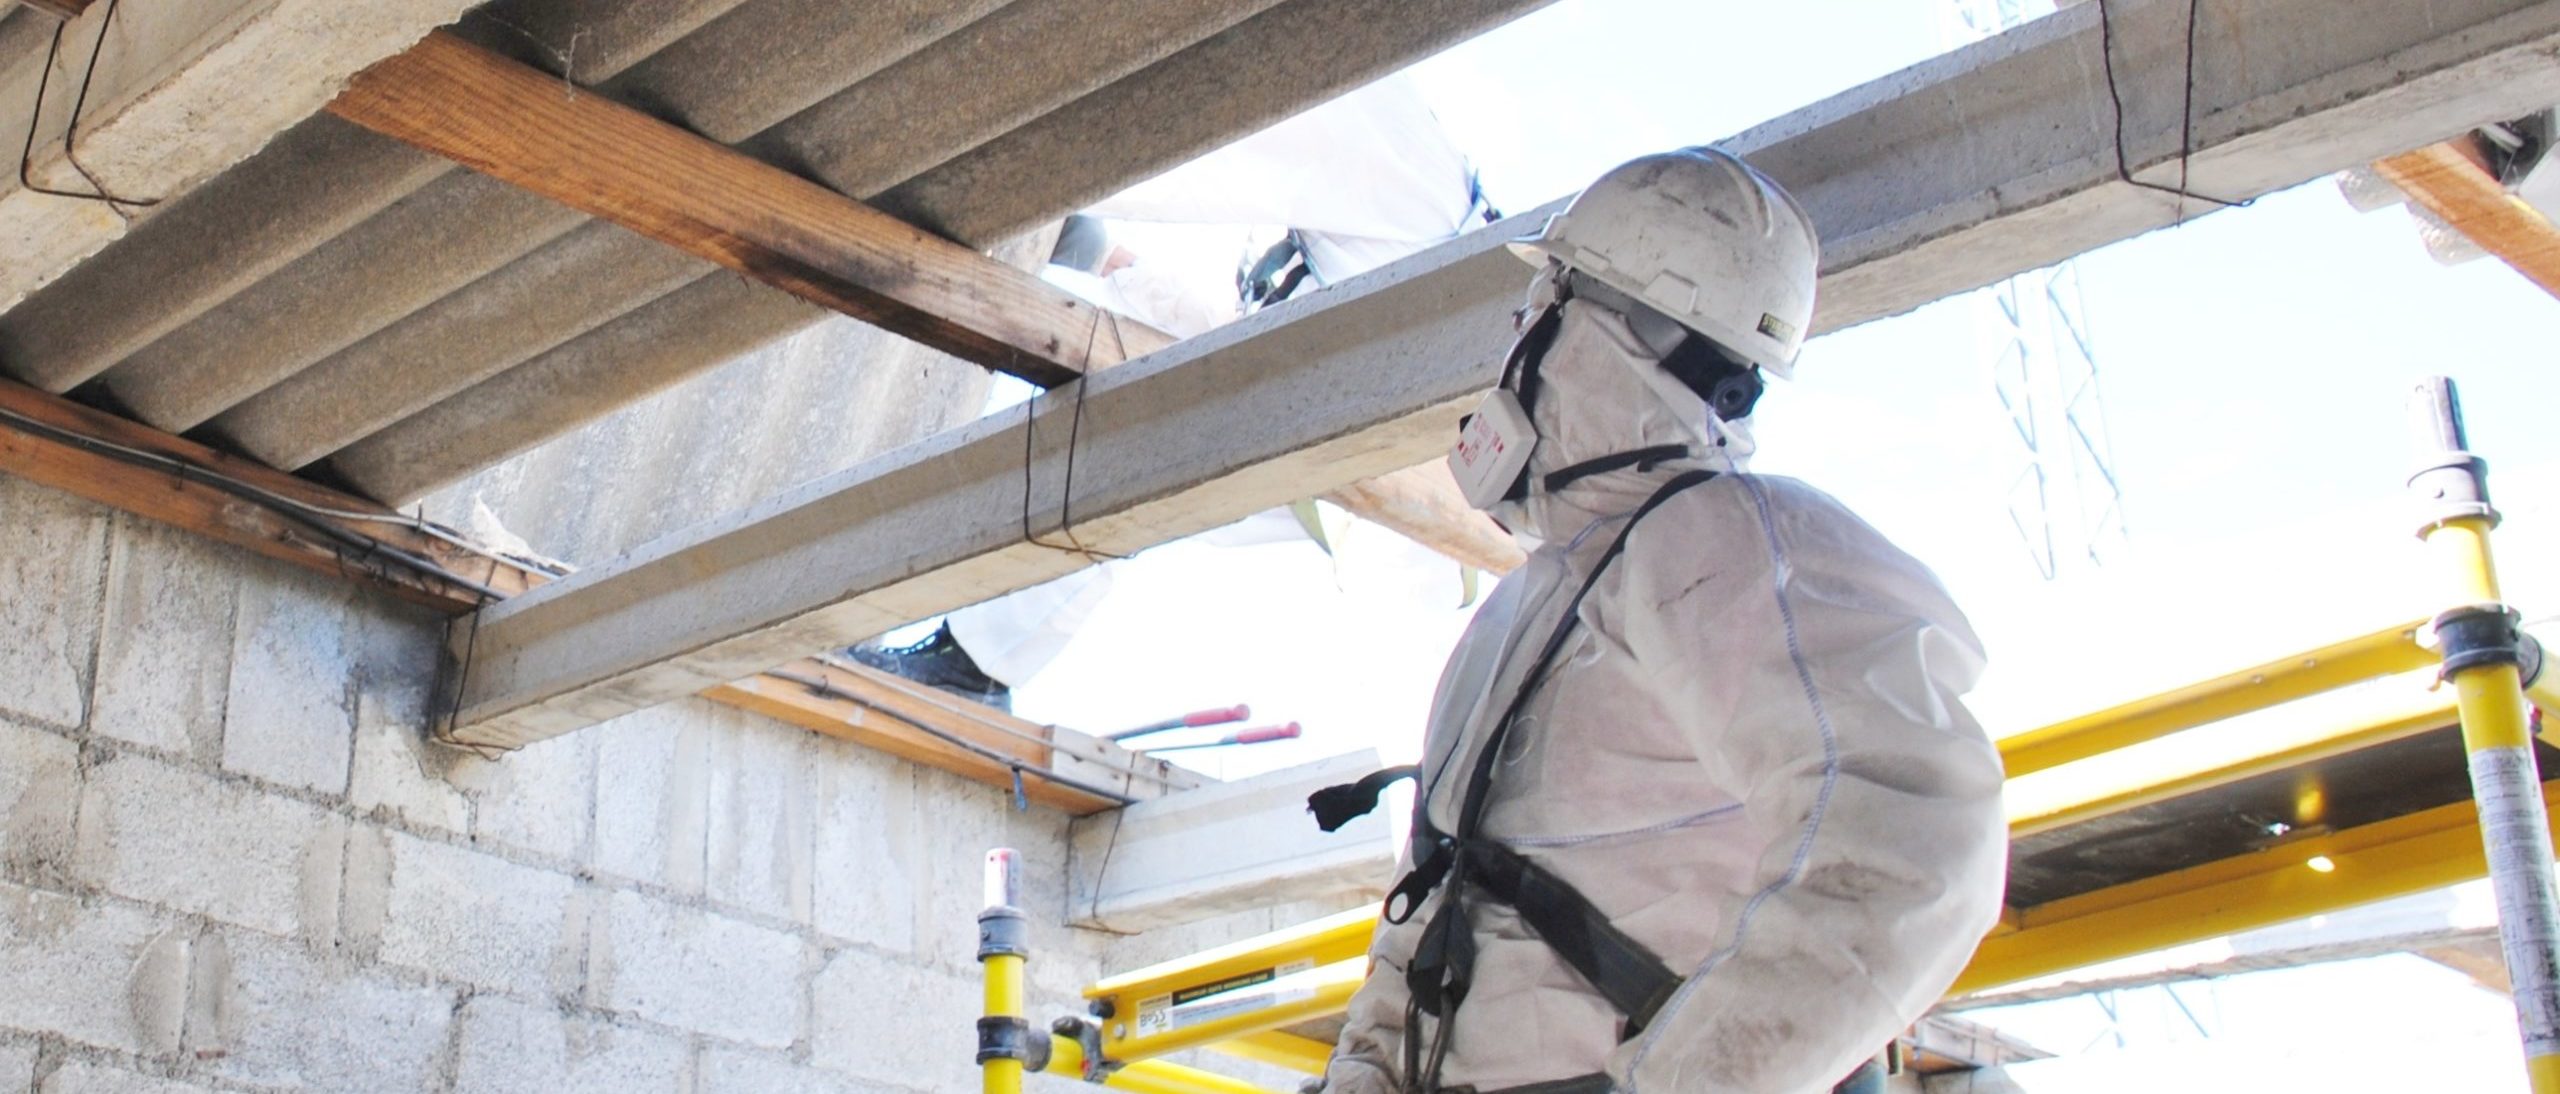 Bei unsachgemäßer Durchführung von Abbruch-, Sanierungs- und Instandhaltungsarbeiten können Asbestfasern freigesetzt werden, die zu ernsthaften Atemwegserkrankungen und anderen gesundheitlichen Problemen führen können.